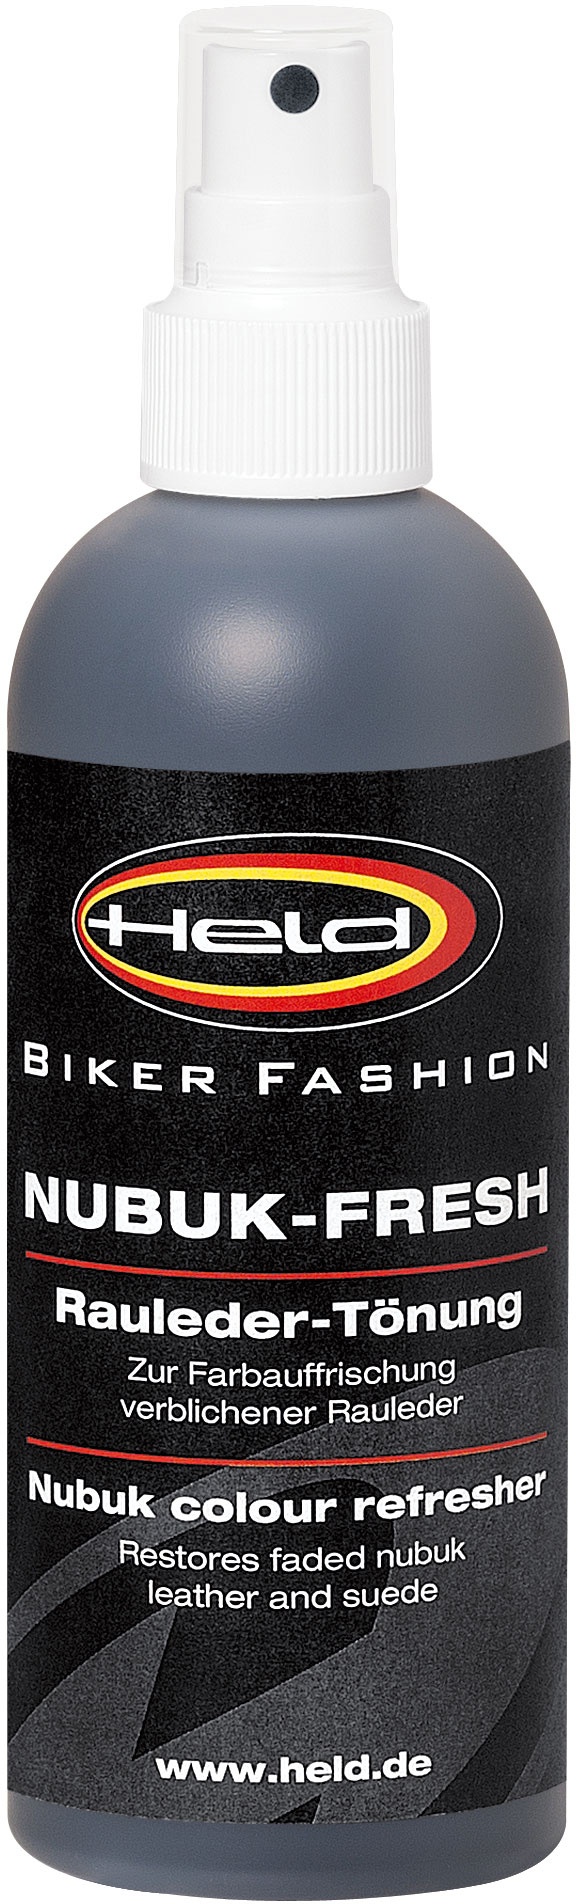 Held Nubuck-/suede shade, Teinte en cuir - Original